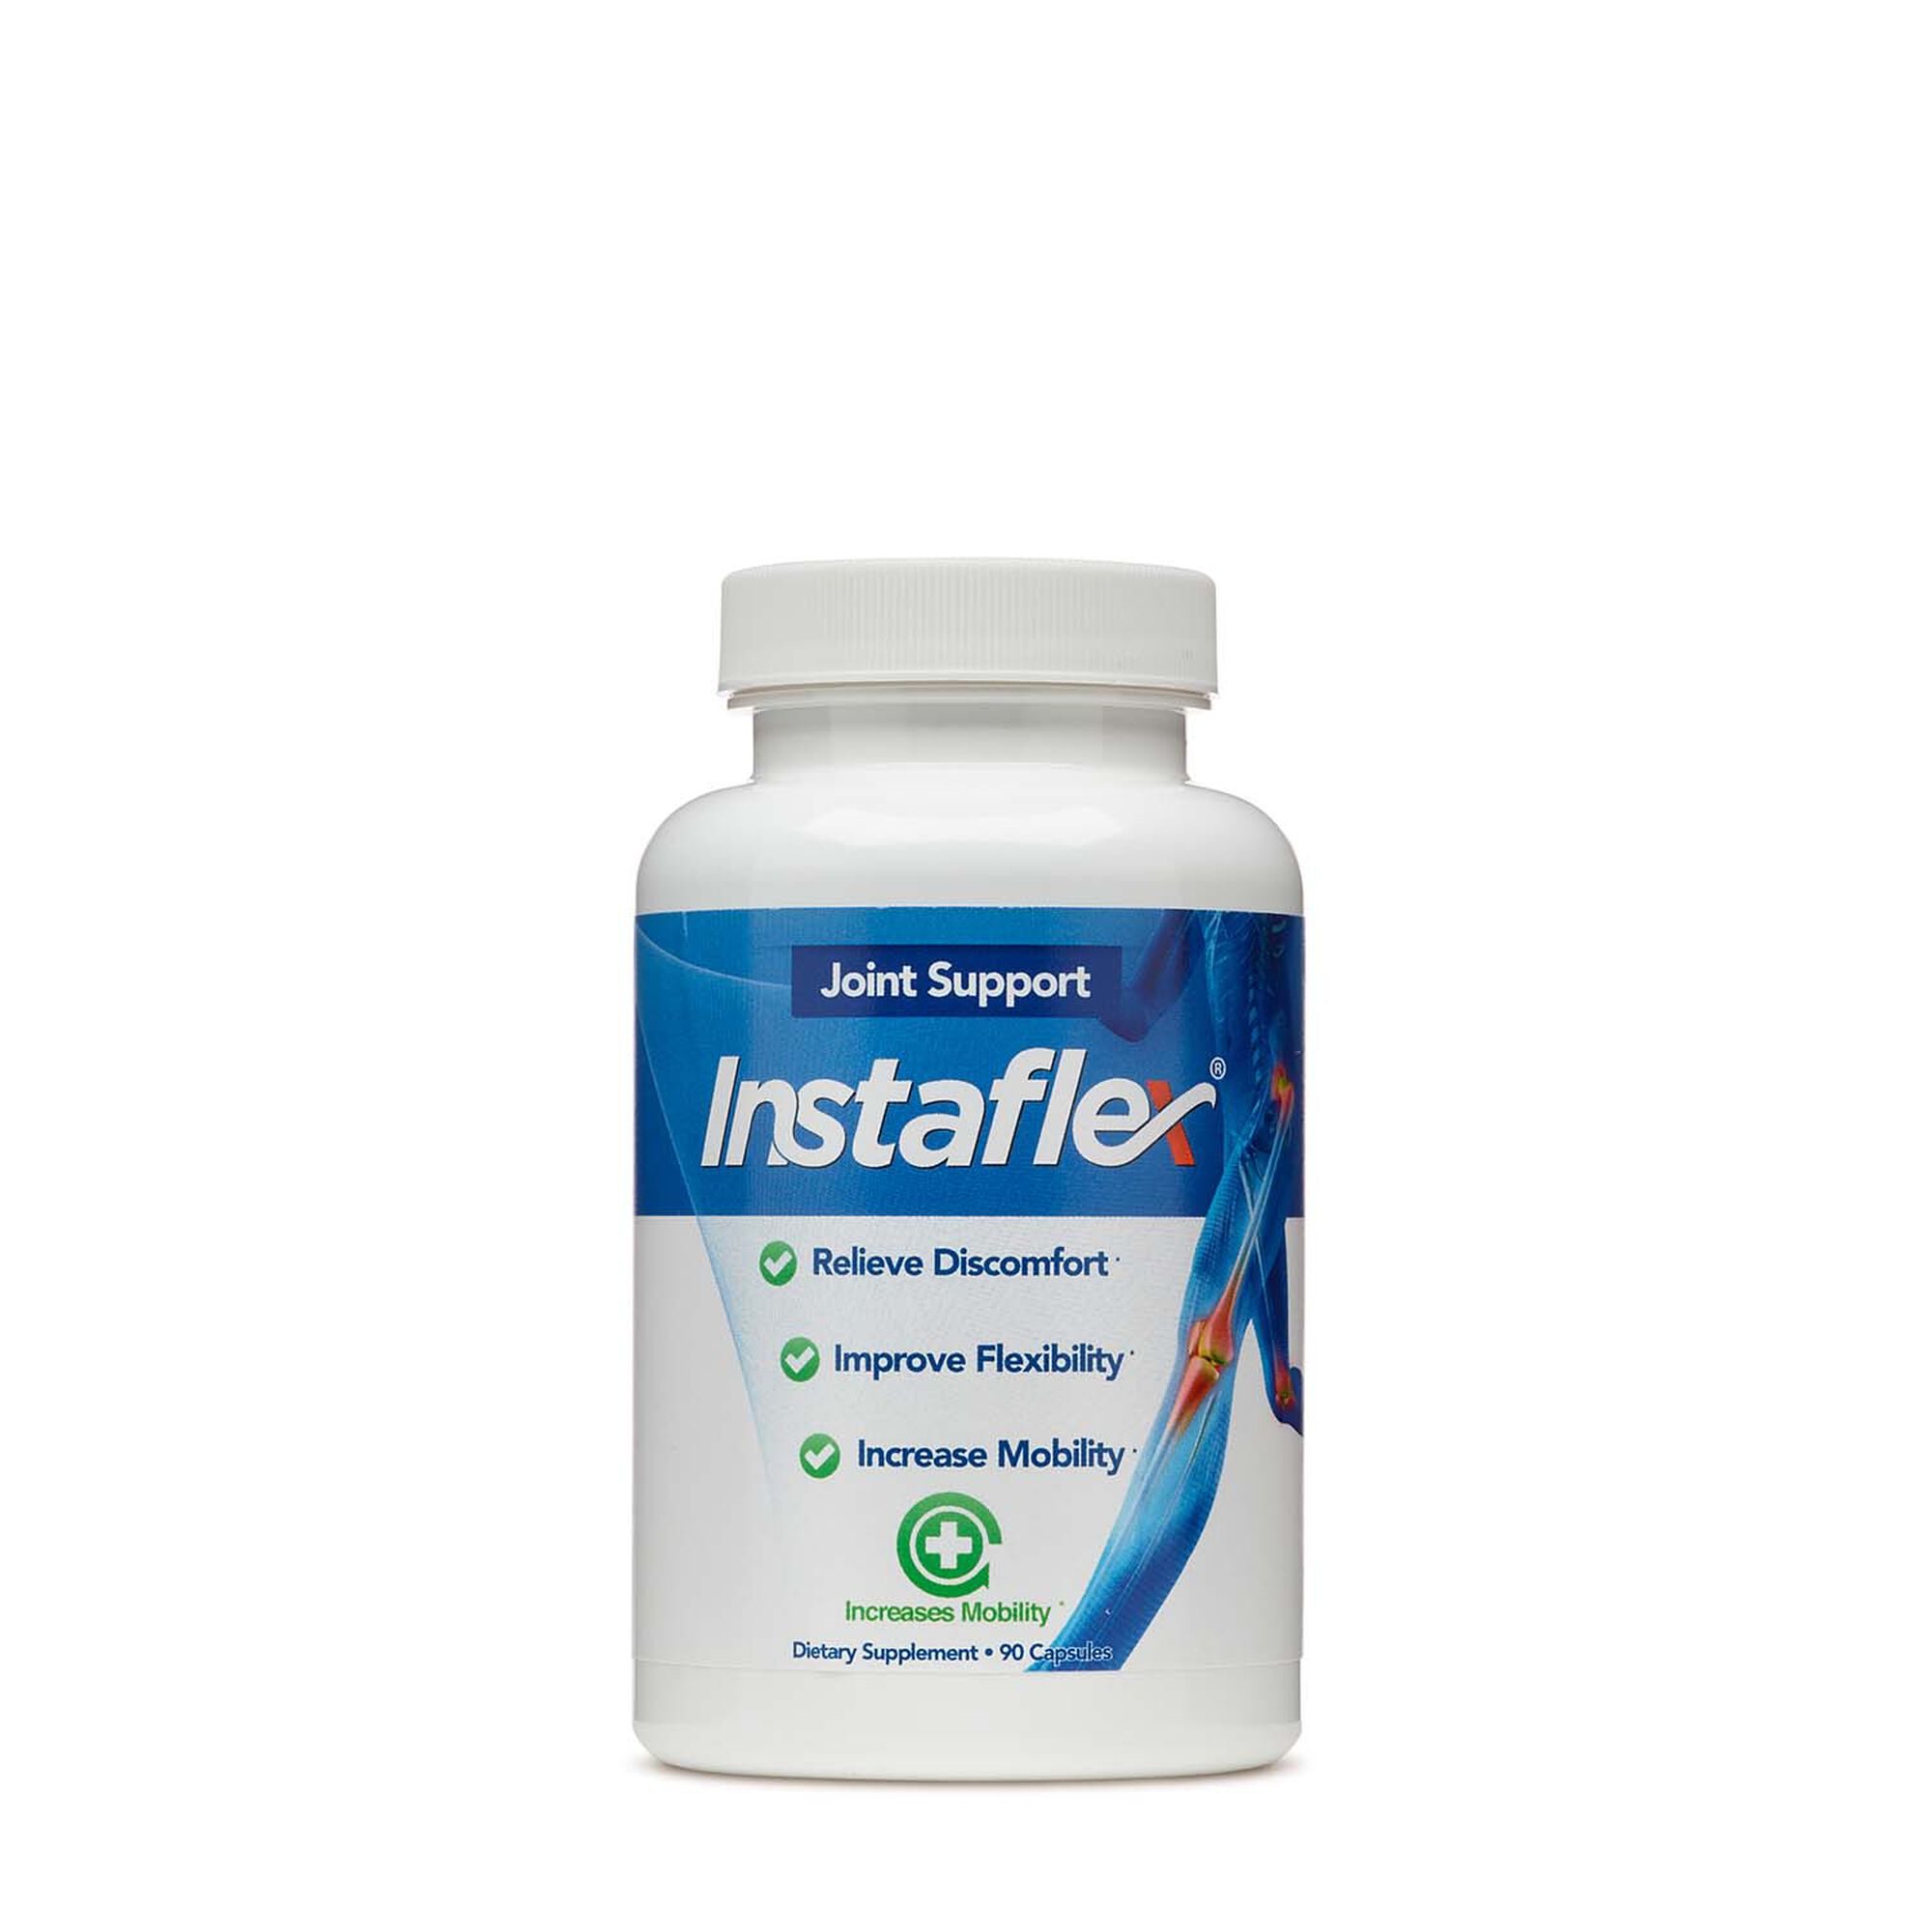 Instaflex Joint Supplement See Instaflex Reviews At Gnc Gnc